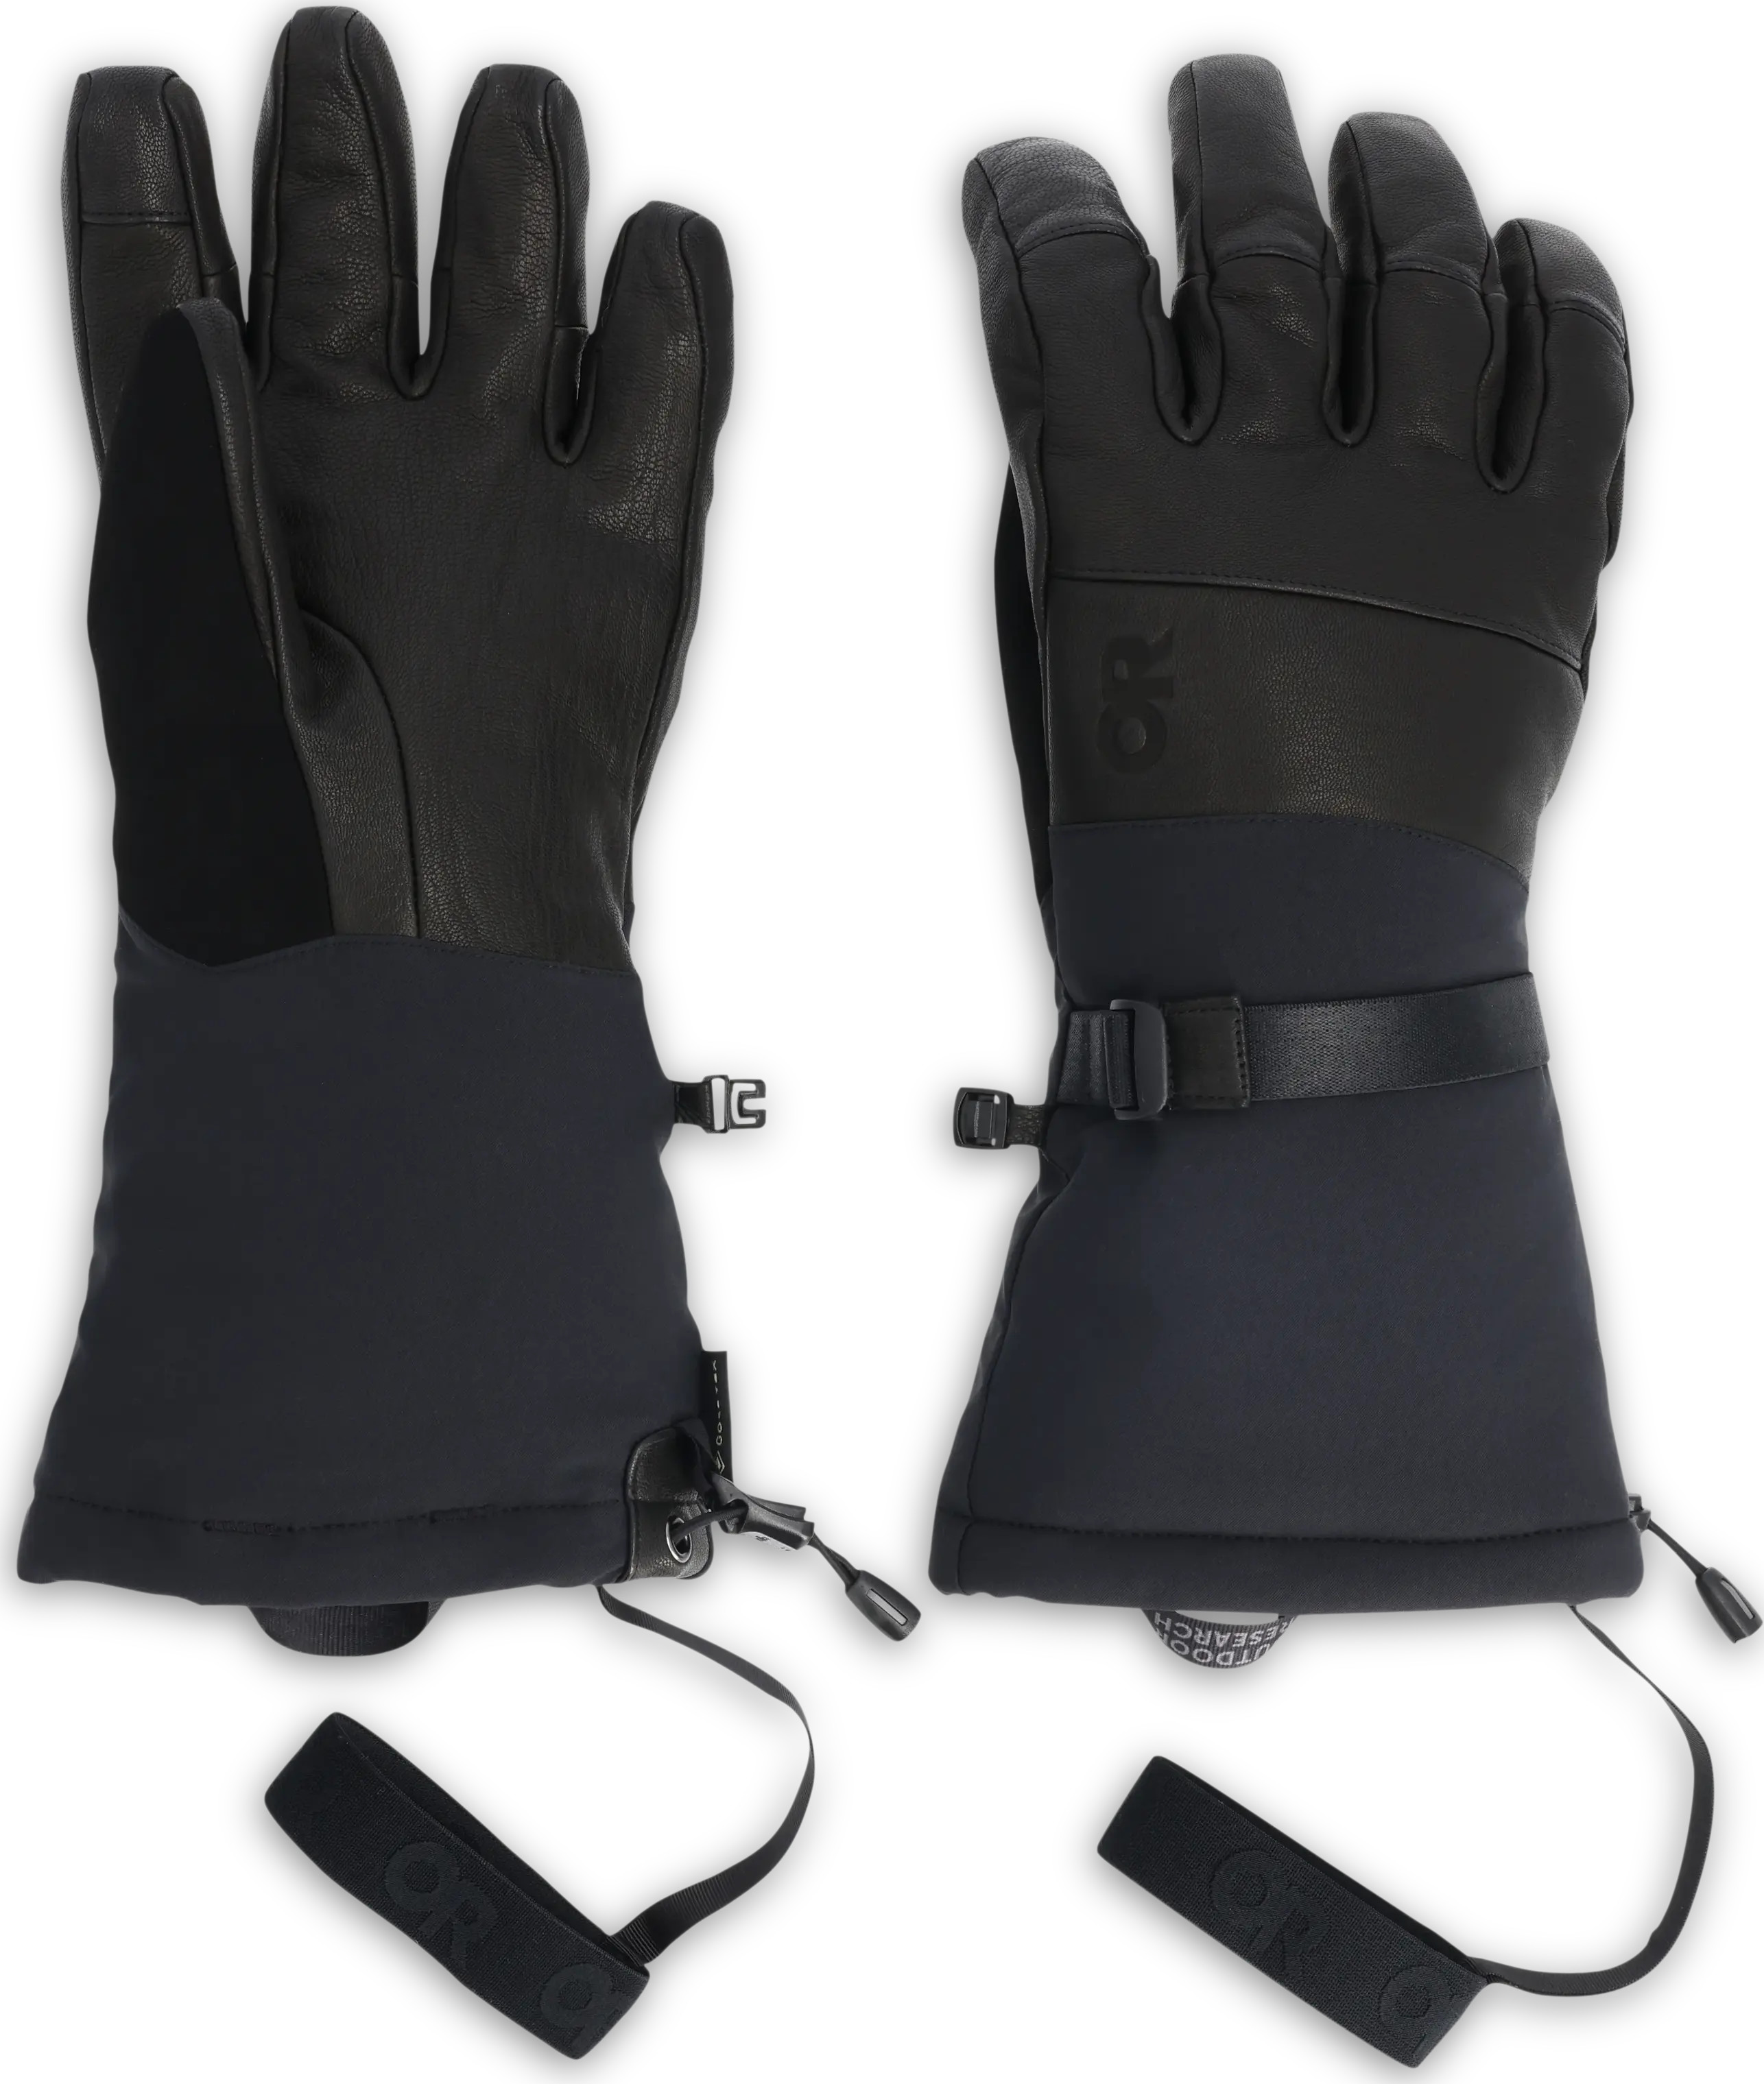 Outdoor Research Men’s Carbide Sensor Gloves Black